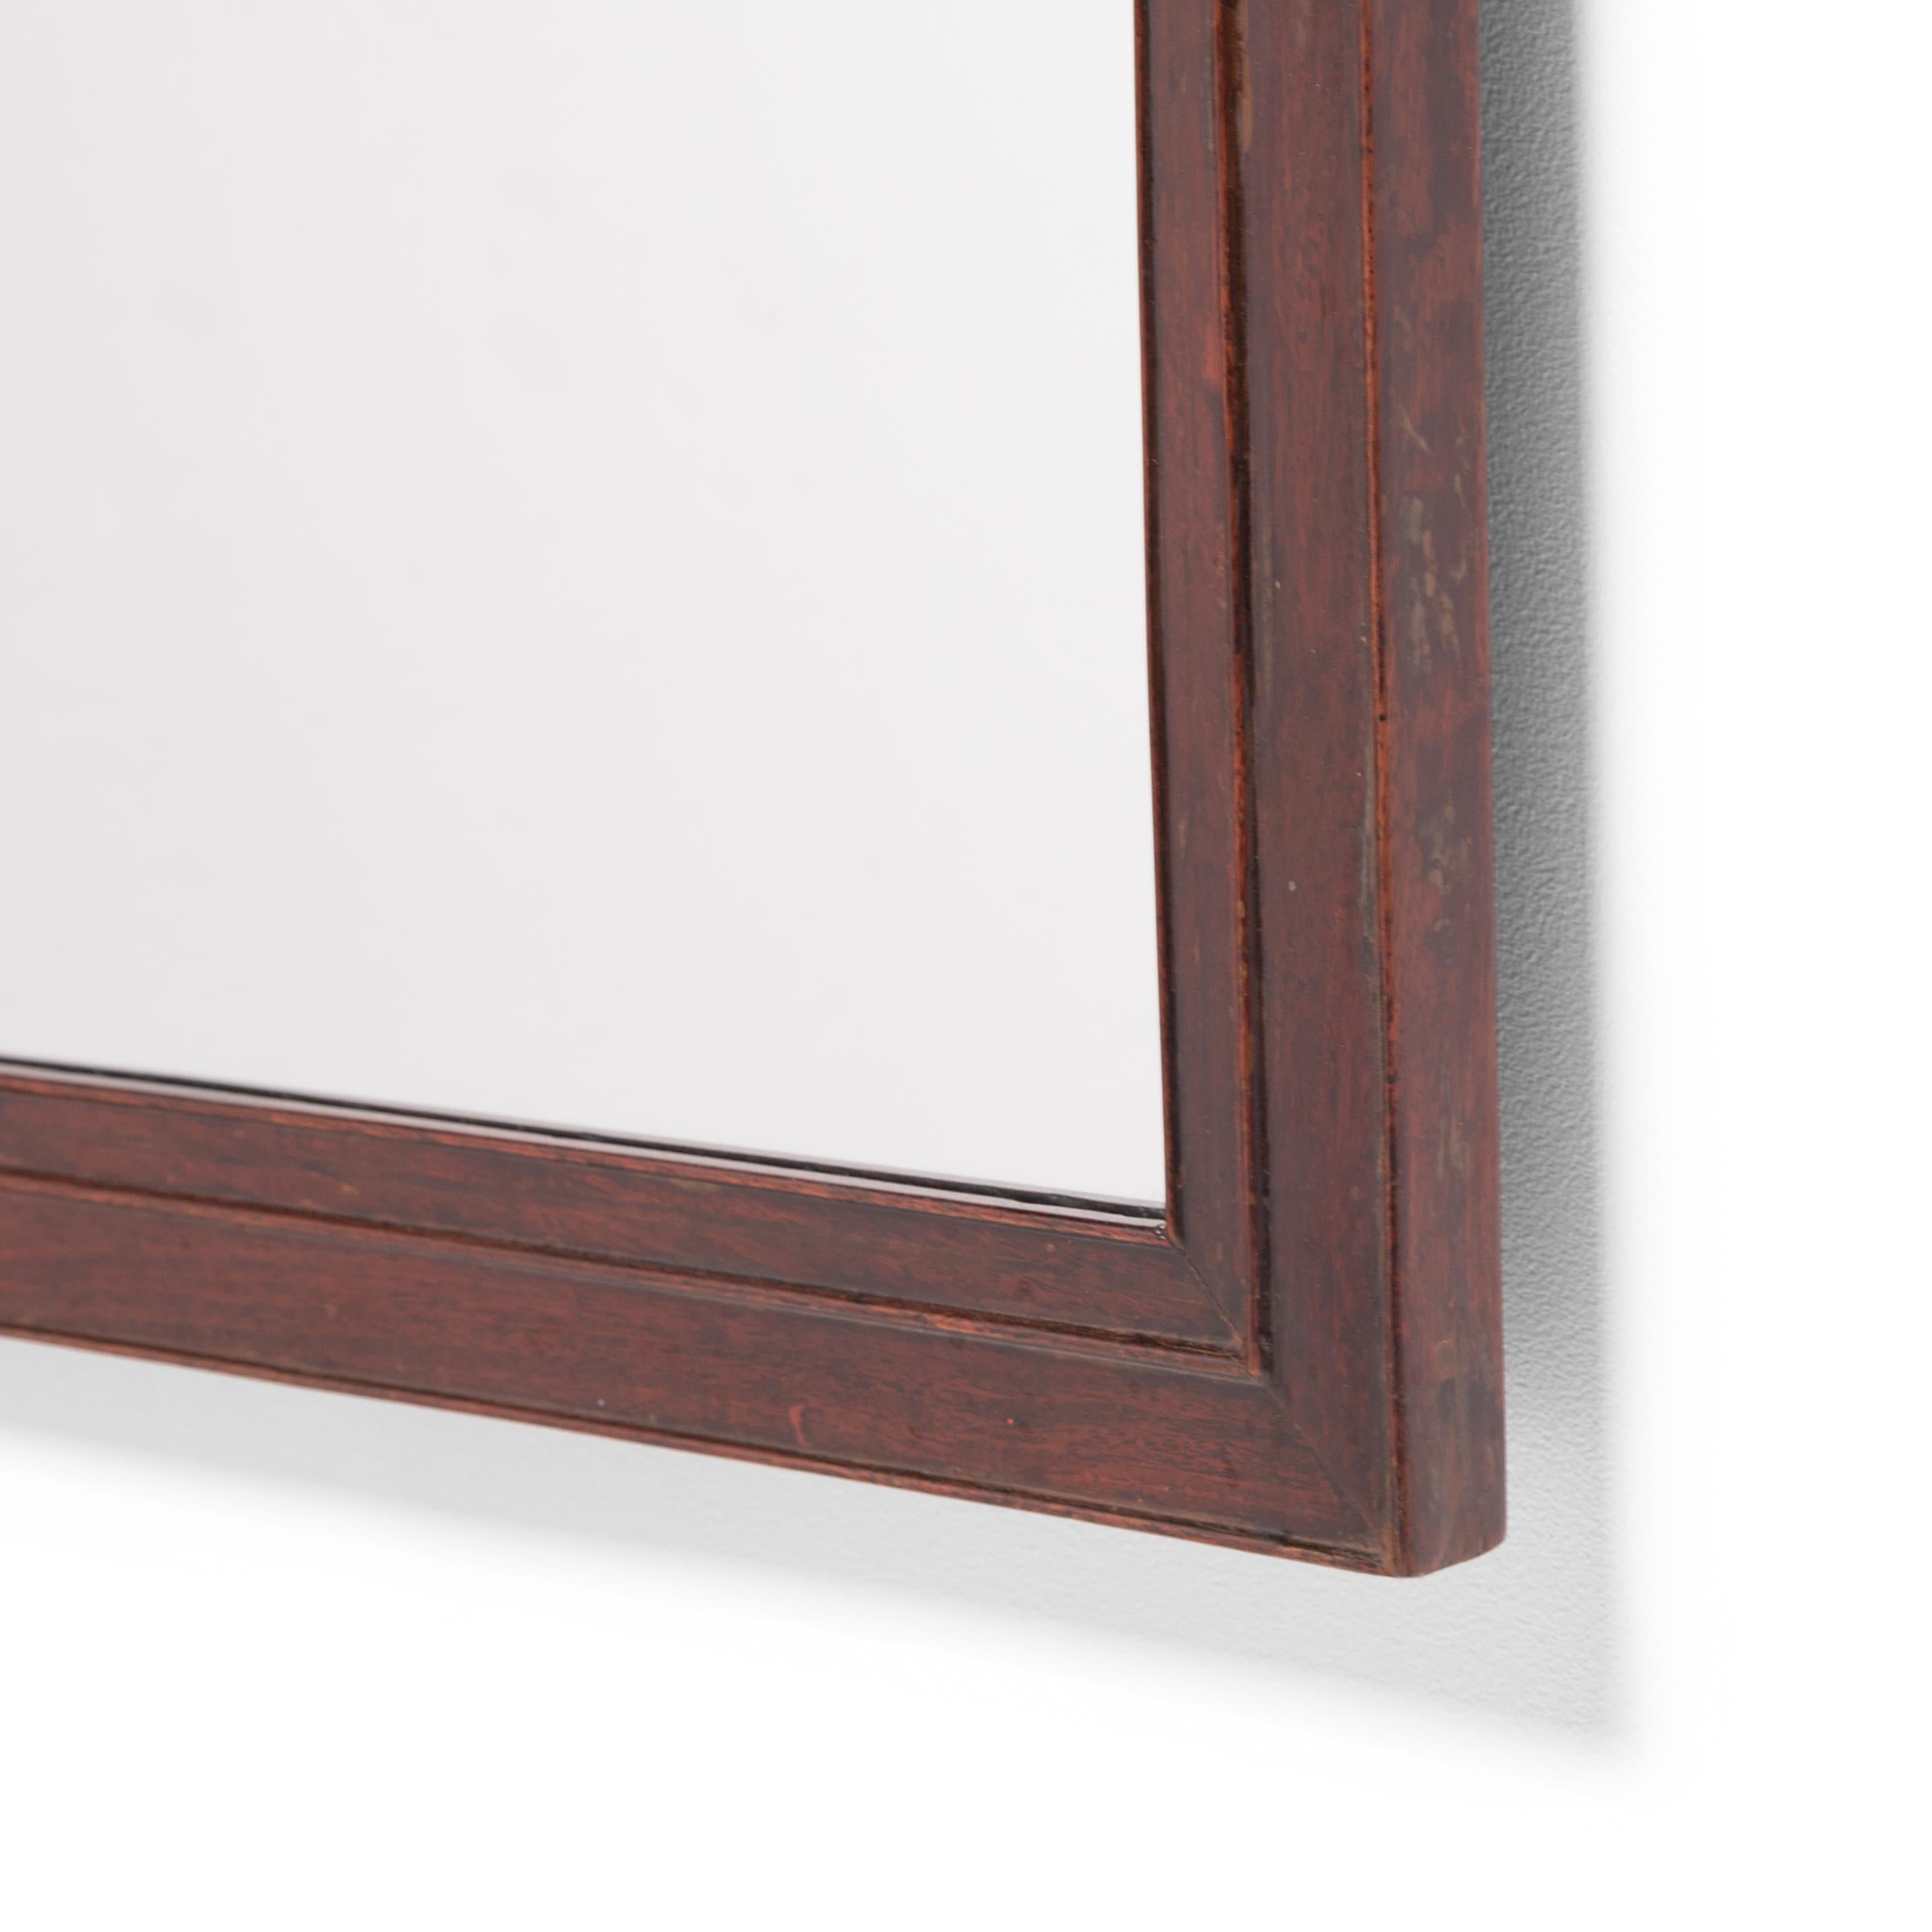 Dieser chinesische Gelehrtenspiegel aus der Mitte des 19. Jahrhunderts ist aus einem feinen Hartholz mit warmer Färbung und dichter Maserung gefertigt. Die Ecken sind auf Gehrung geschnitten und der Rahmen ist rundum mit drei dünnen Wulsträndern